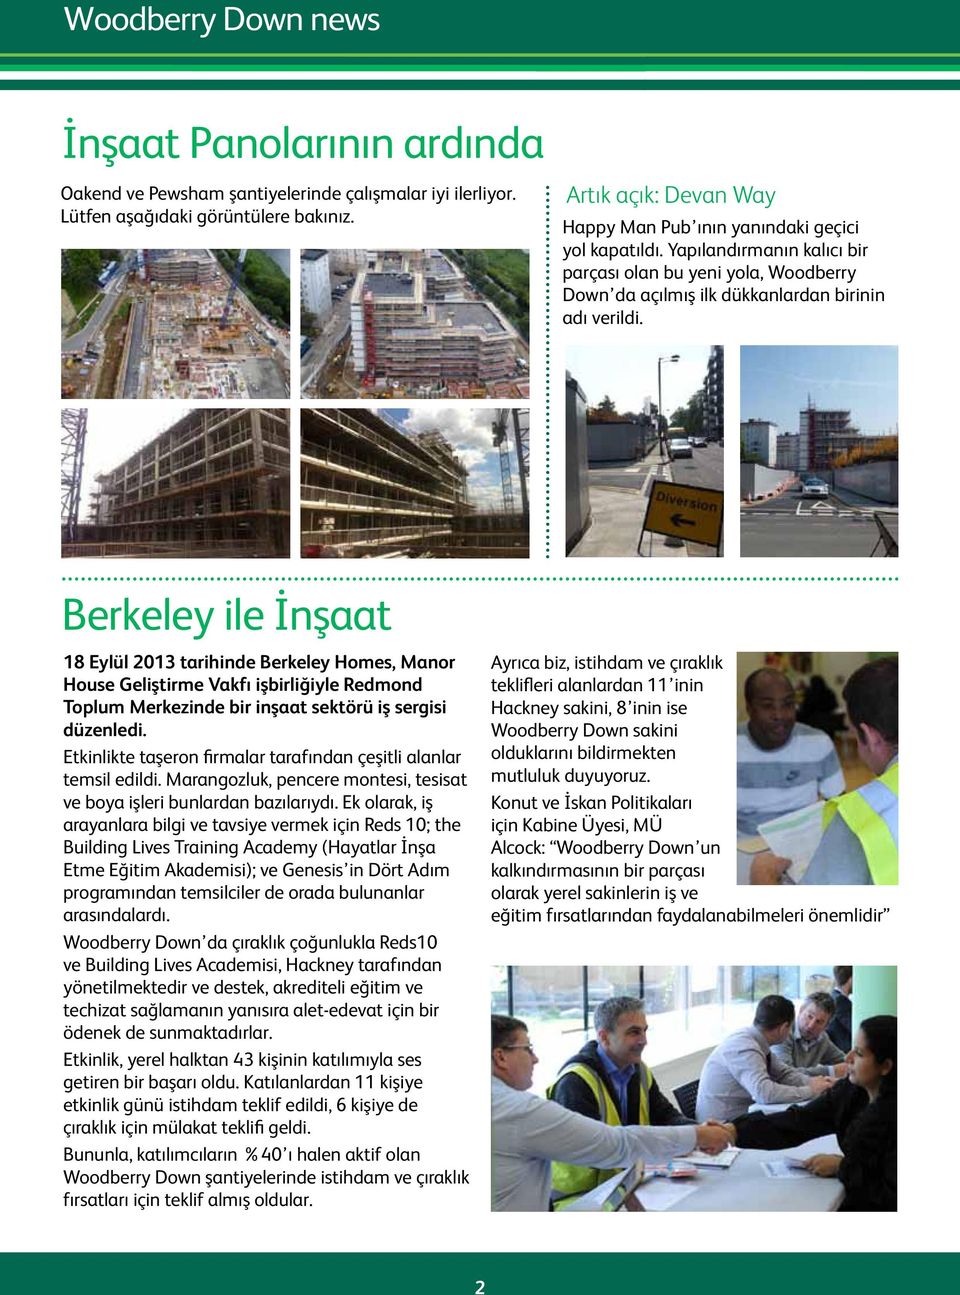 Berkeley ile İnşaat 18 Eylül 2013 tarihinde Berkeley Homes, Manor House Geliştirme Vakfı işbirliğiyle Redmond Toplum Merkezinde bir inşaat sektörü iş sergisi düzenledi.